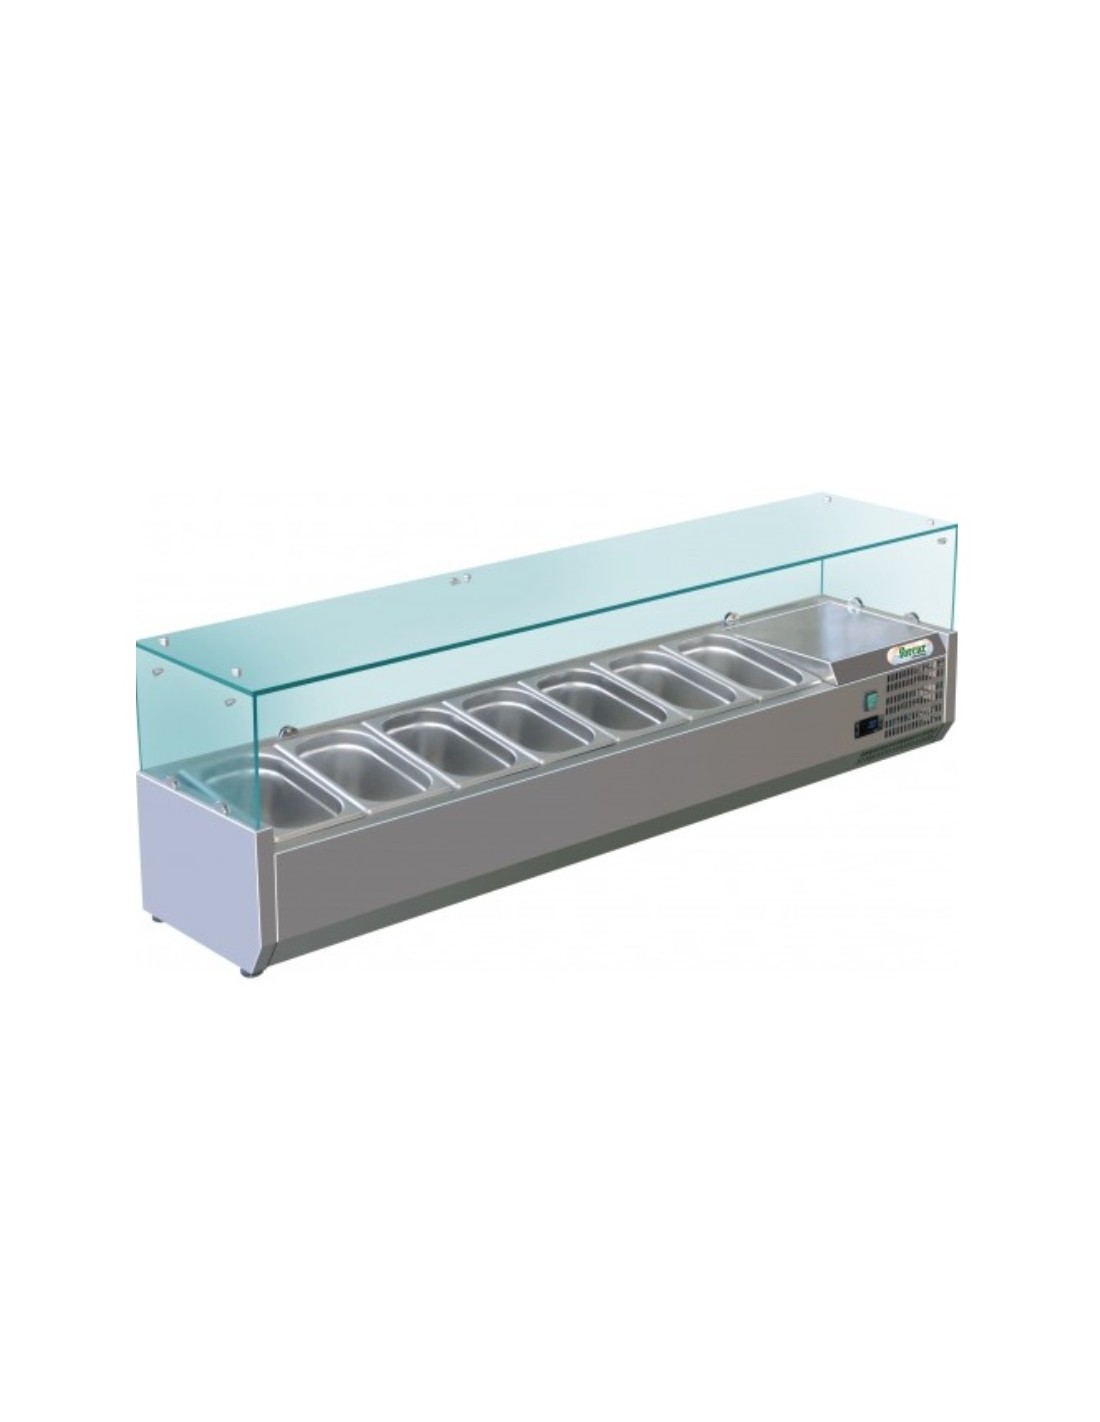 Vitrina refrigerada estantería para ingredientes - Modelo RI15033V - Estático - Capacidad 7 bandejas GN 1/4 - cm150 x 33 x 44.5h